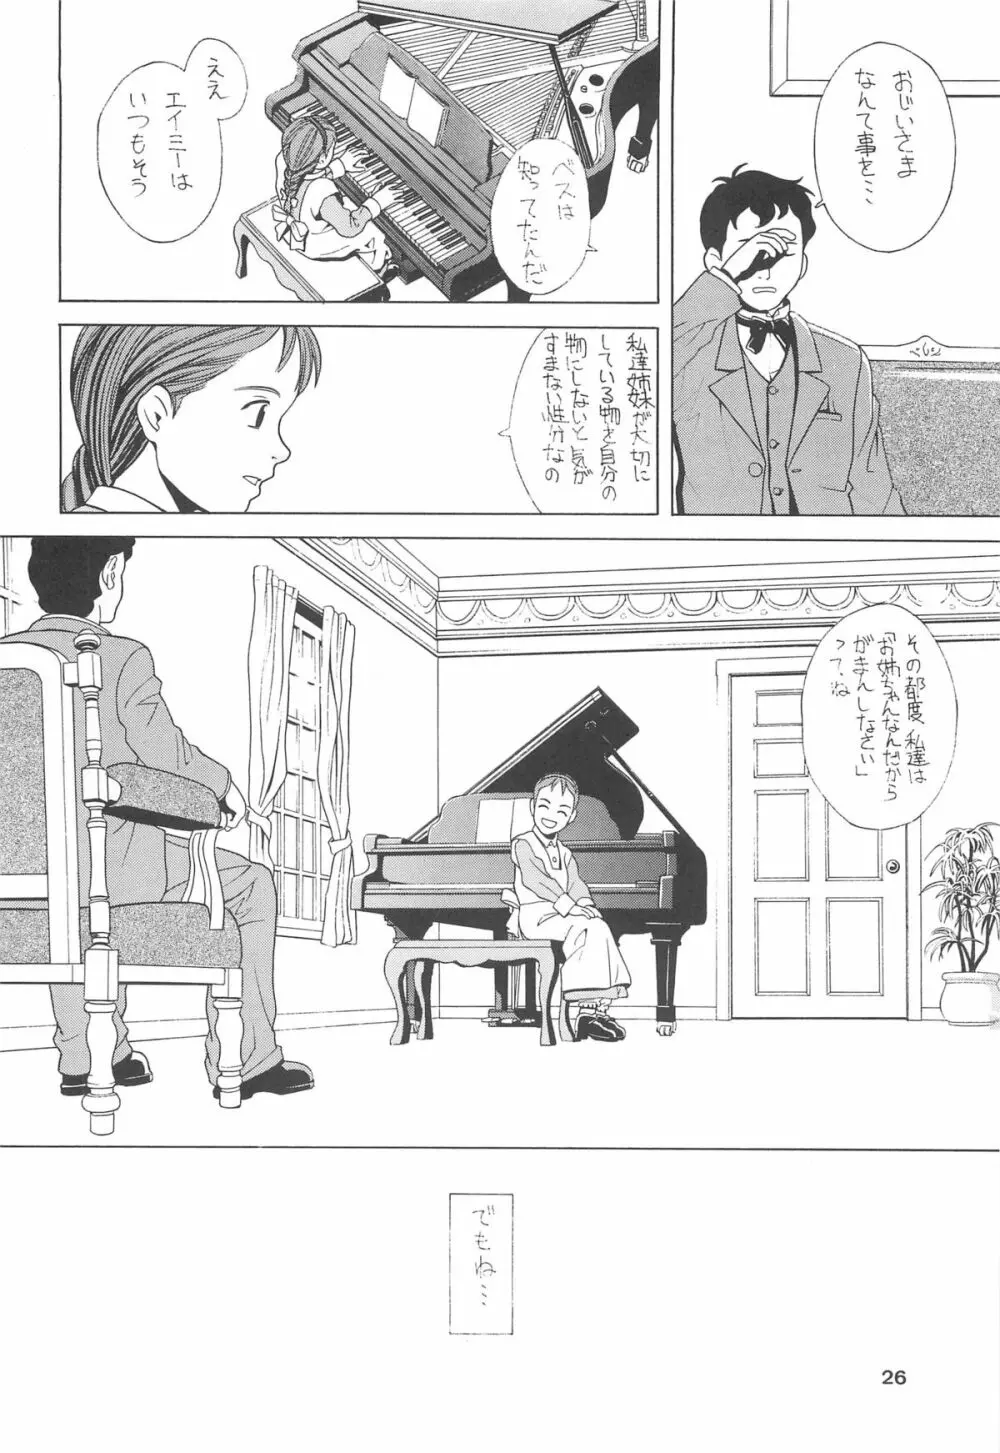 ハッチ&ずっきーの世界迷作劇場 - page26